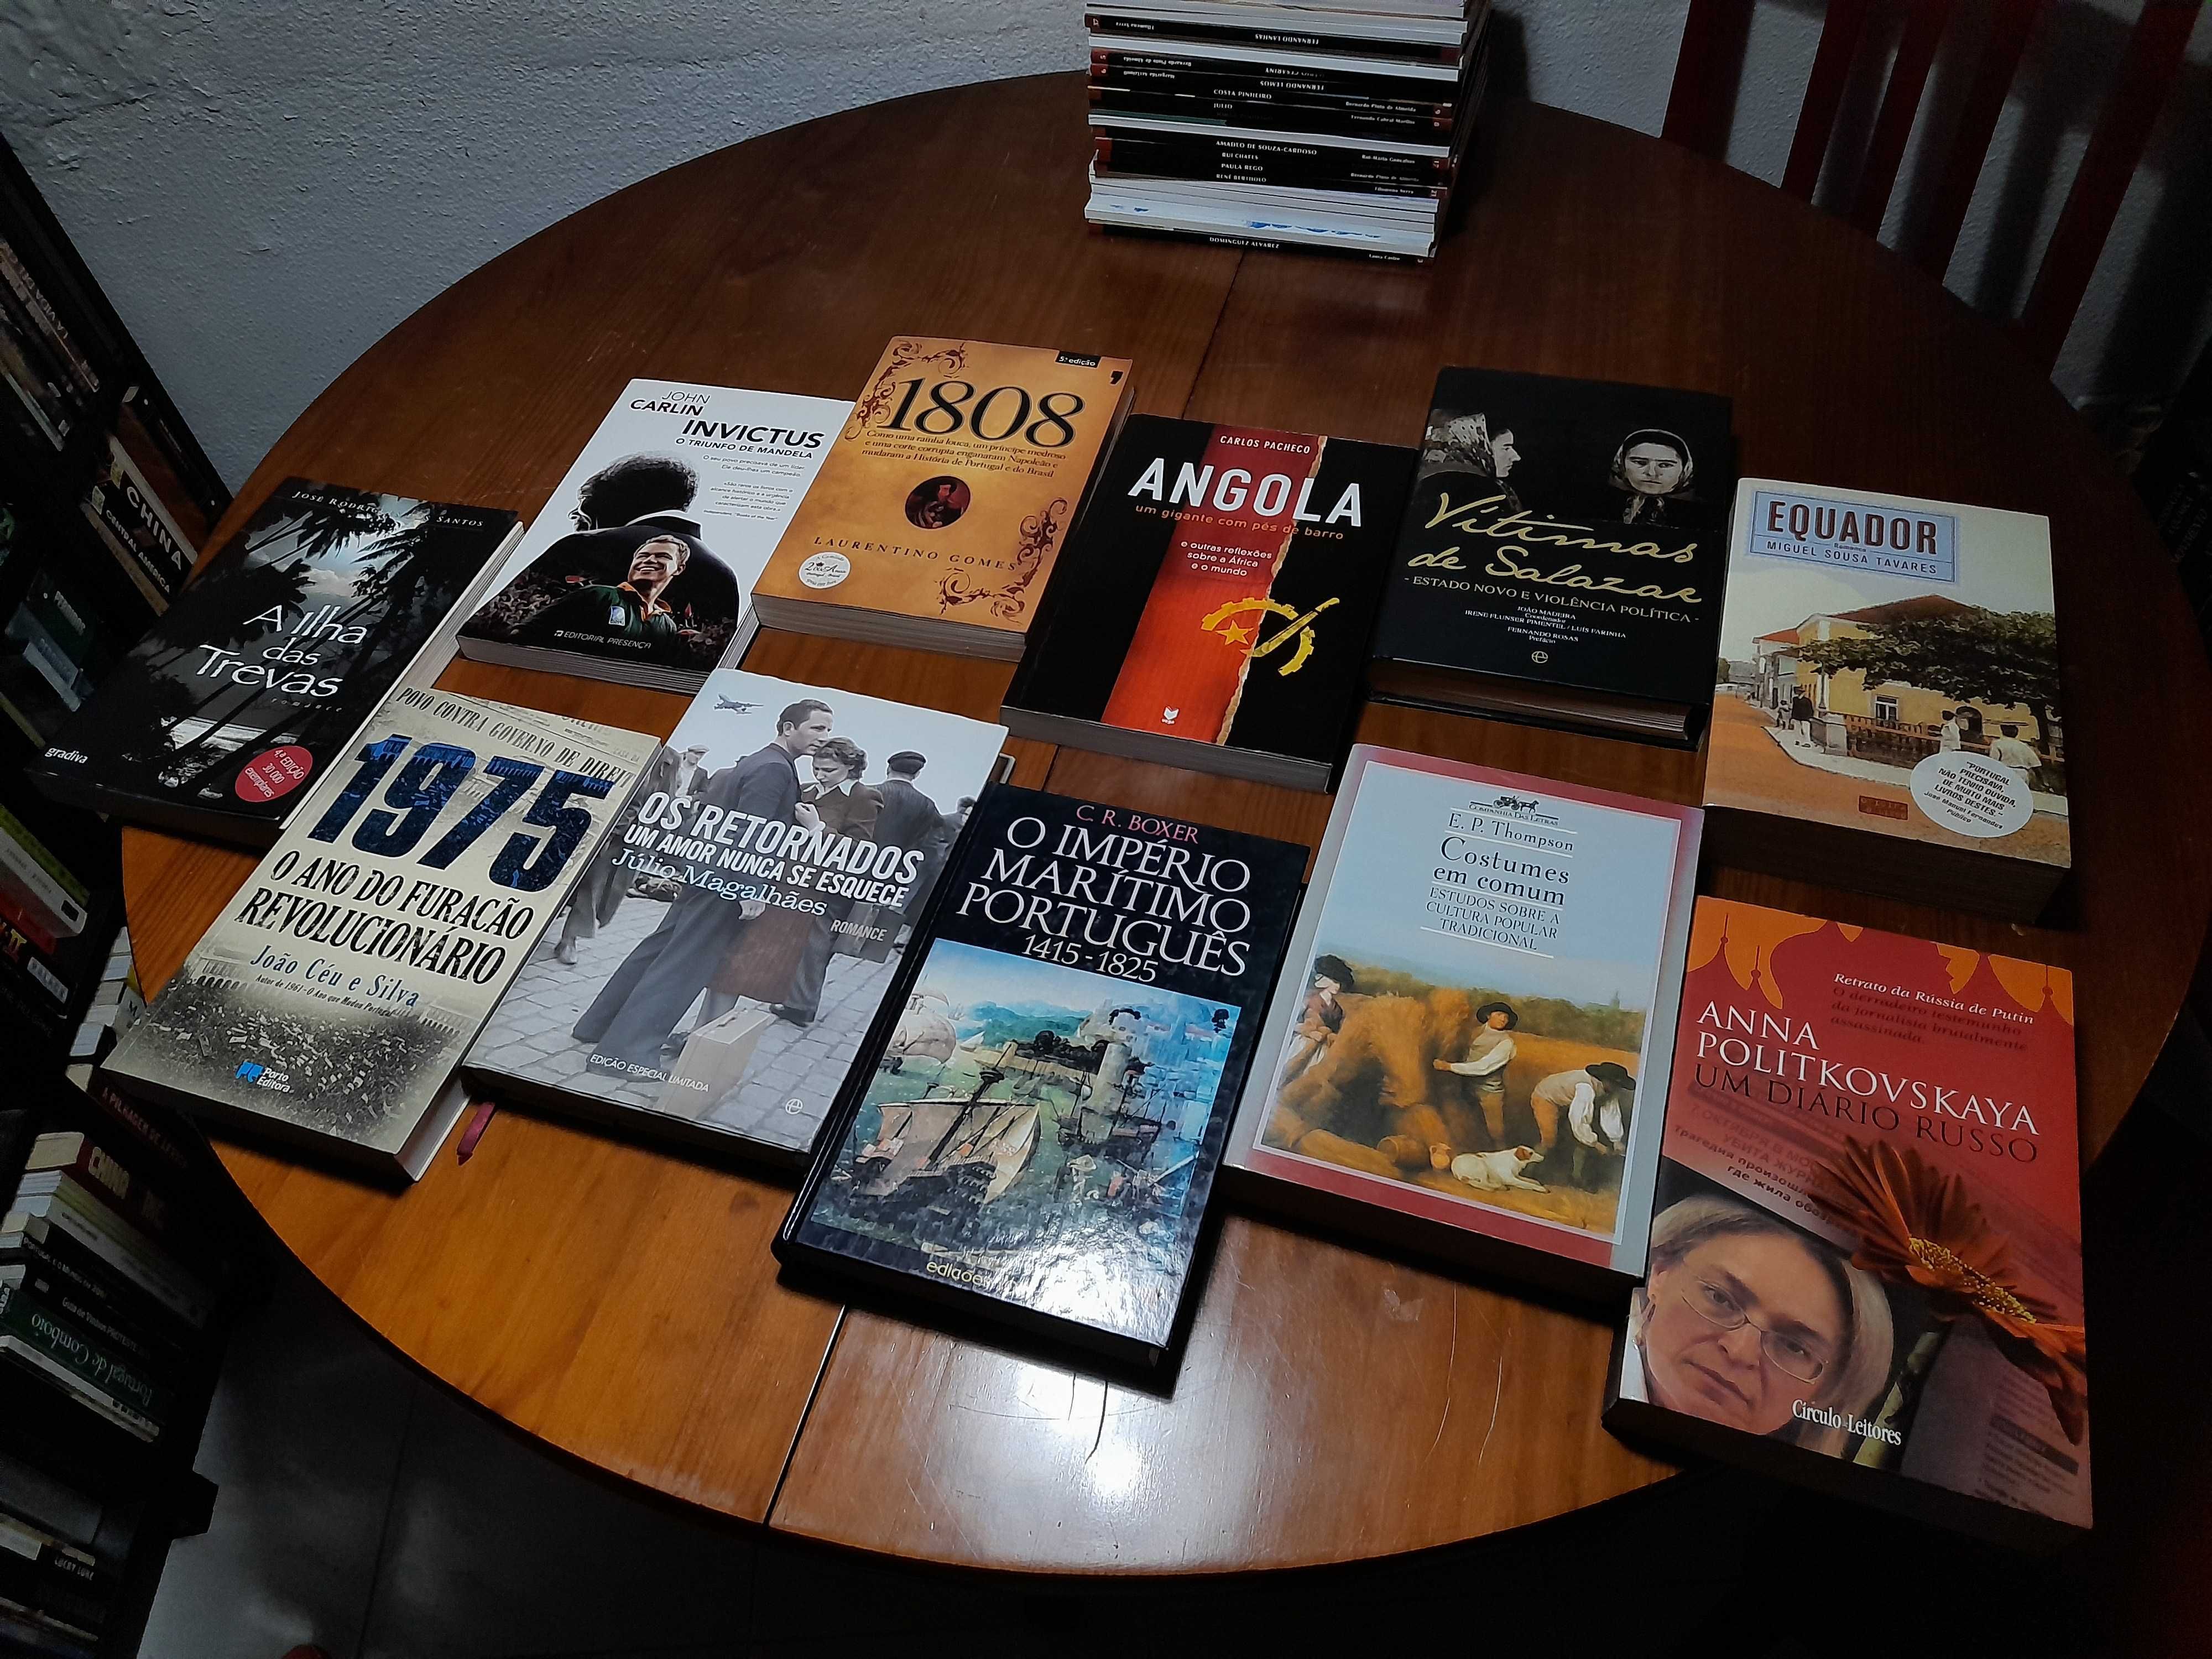 Lote de livros de história, sociologia, politica e romances.